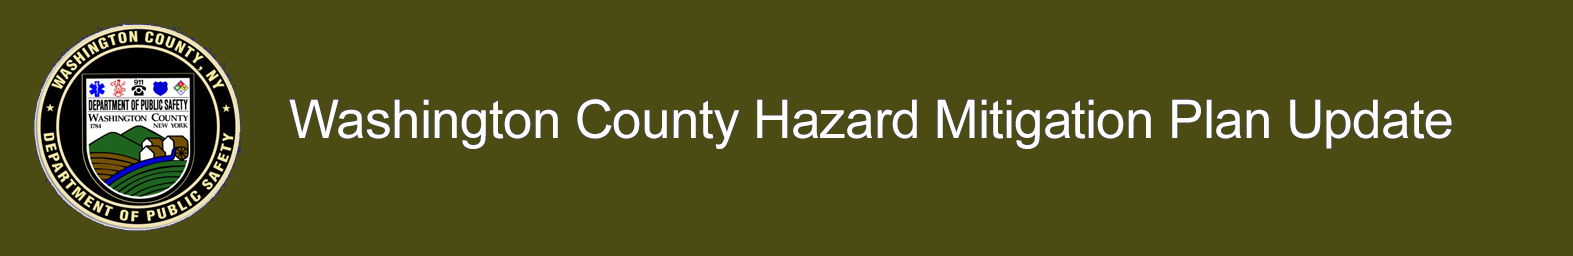 Washington County Hazard Mitigation Plan Update